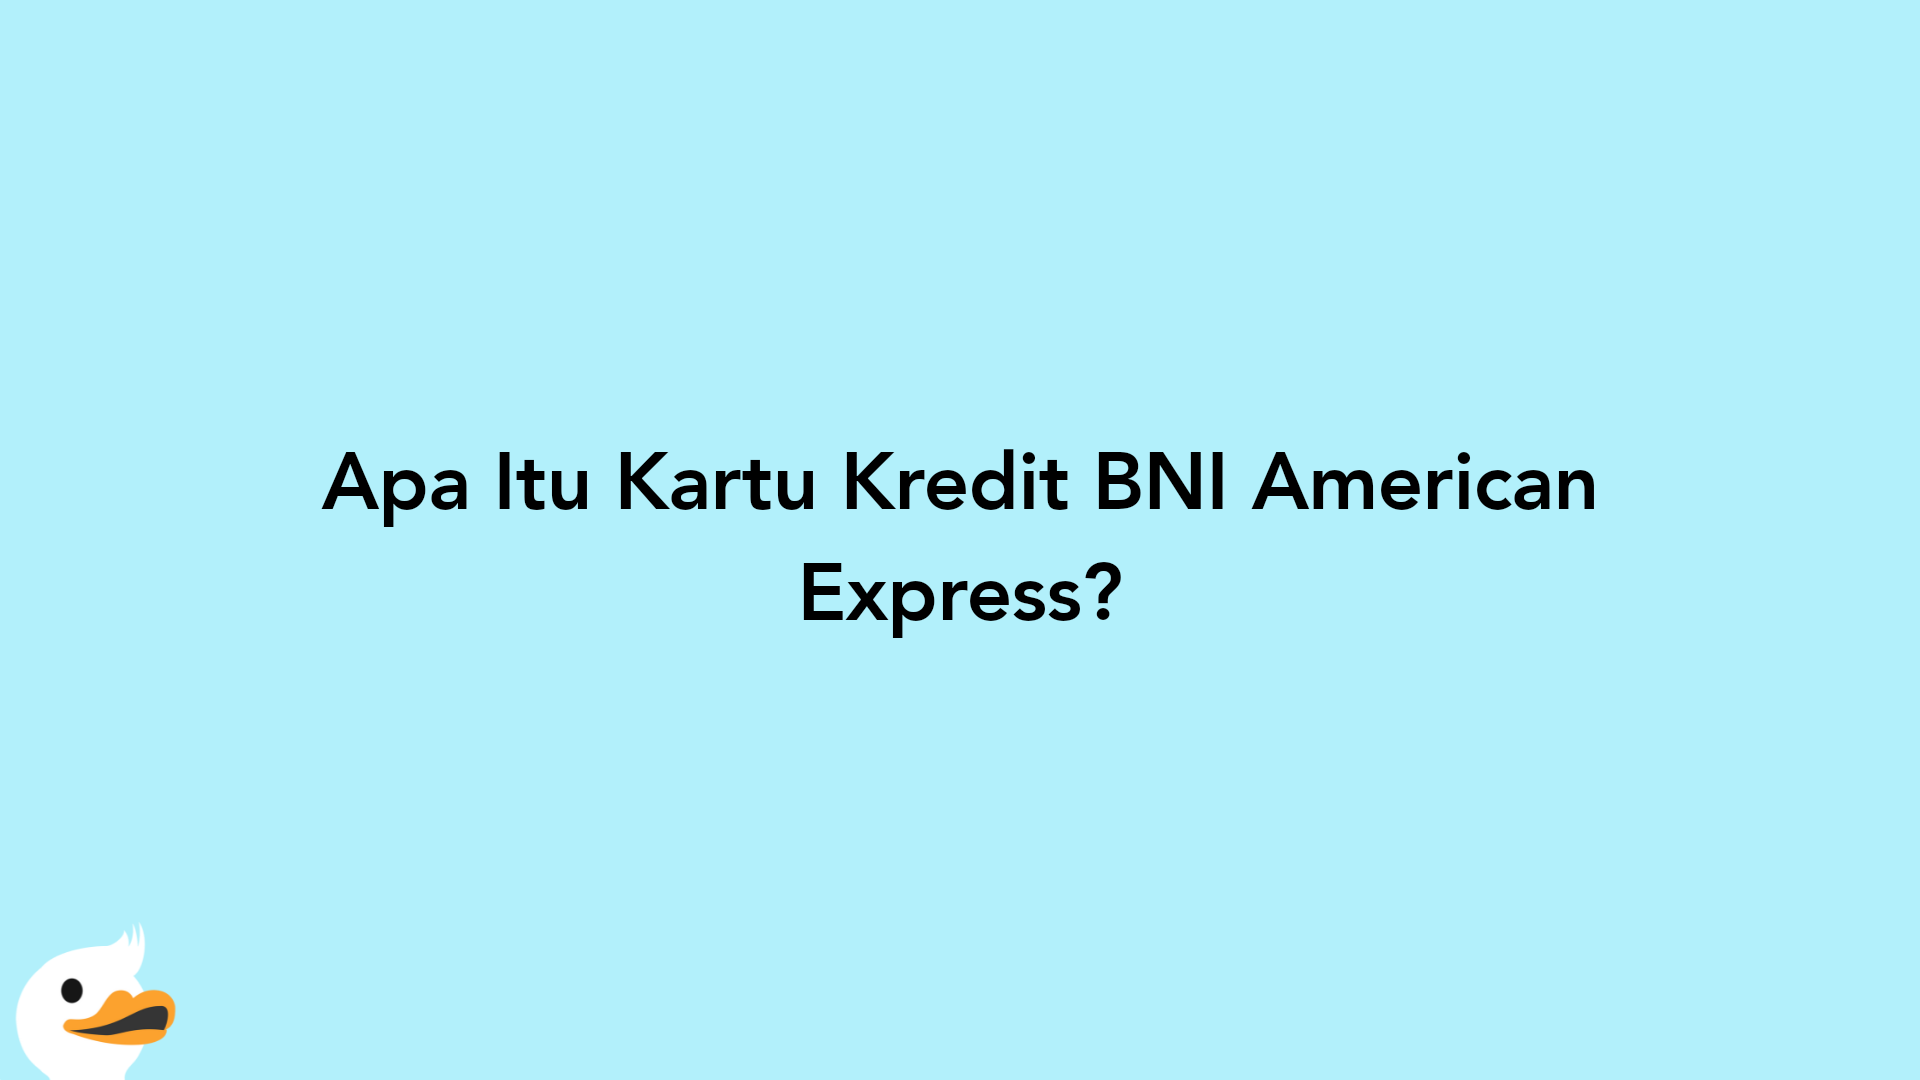 Apa Itu Kartu Kredit BNI American Express?